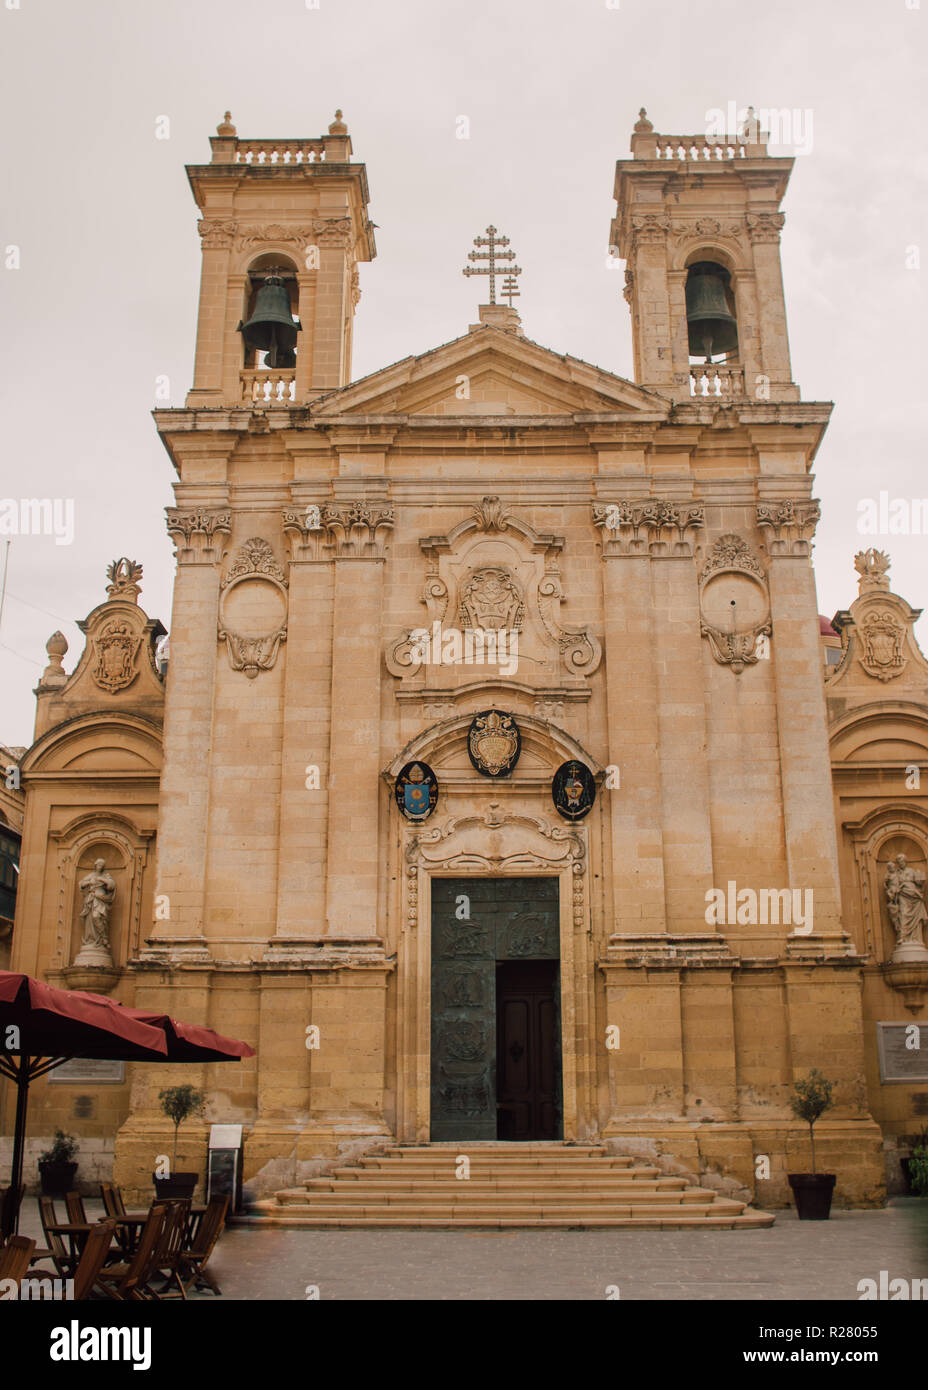 View to St George's Basilica  in Victoria, Malta Stock Photo